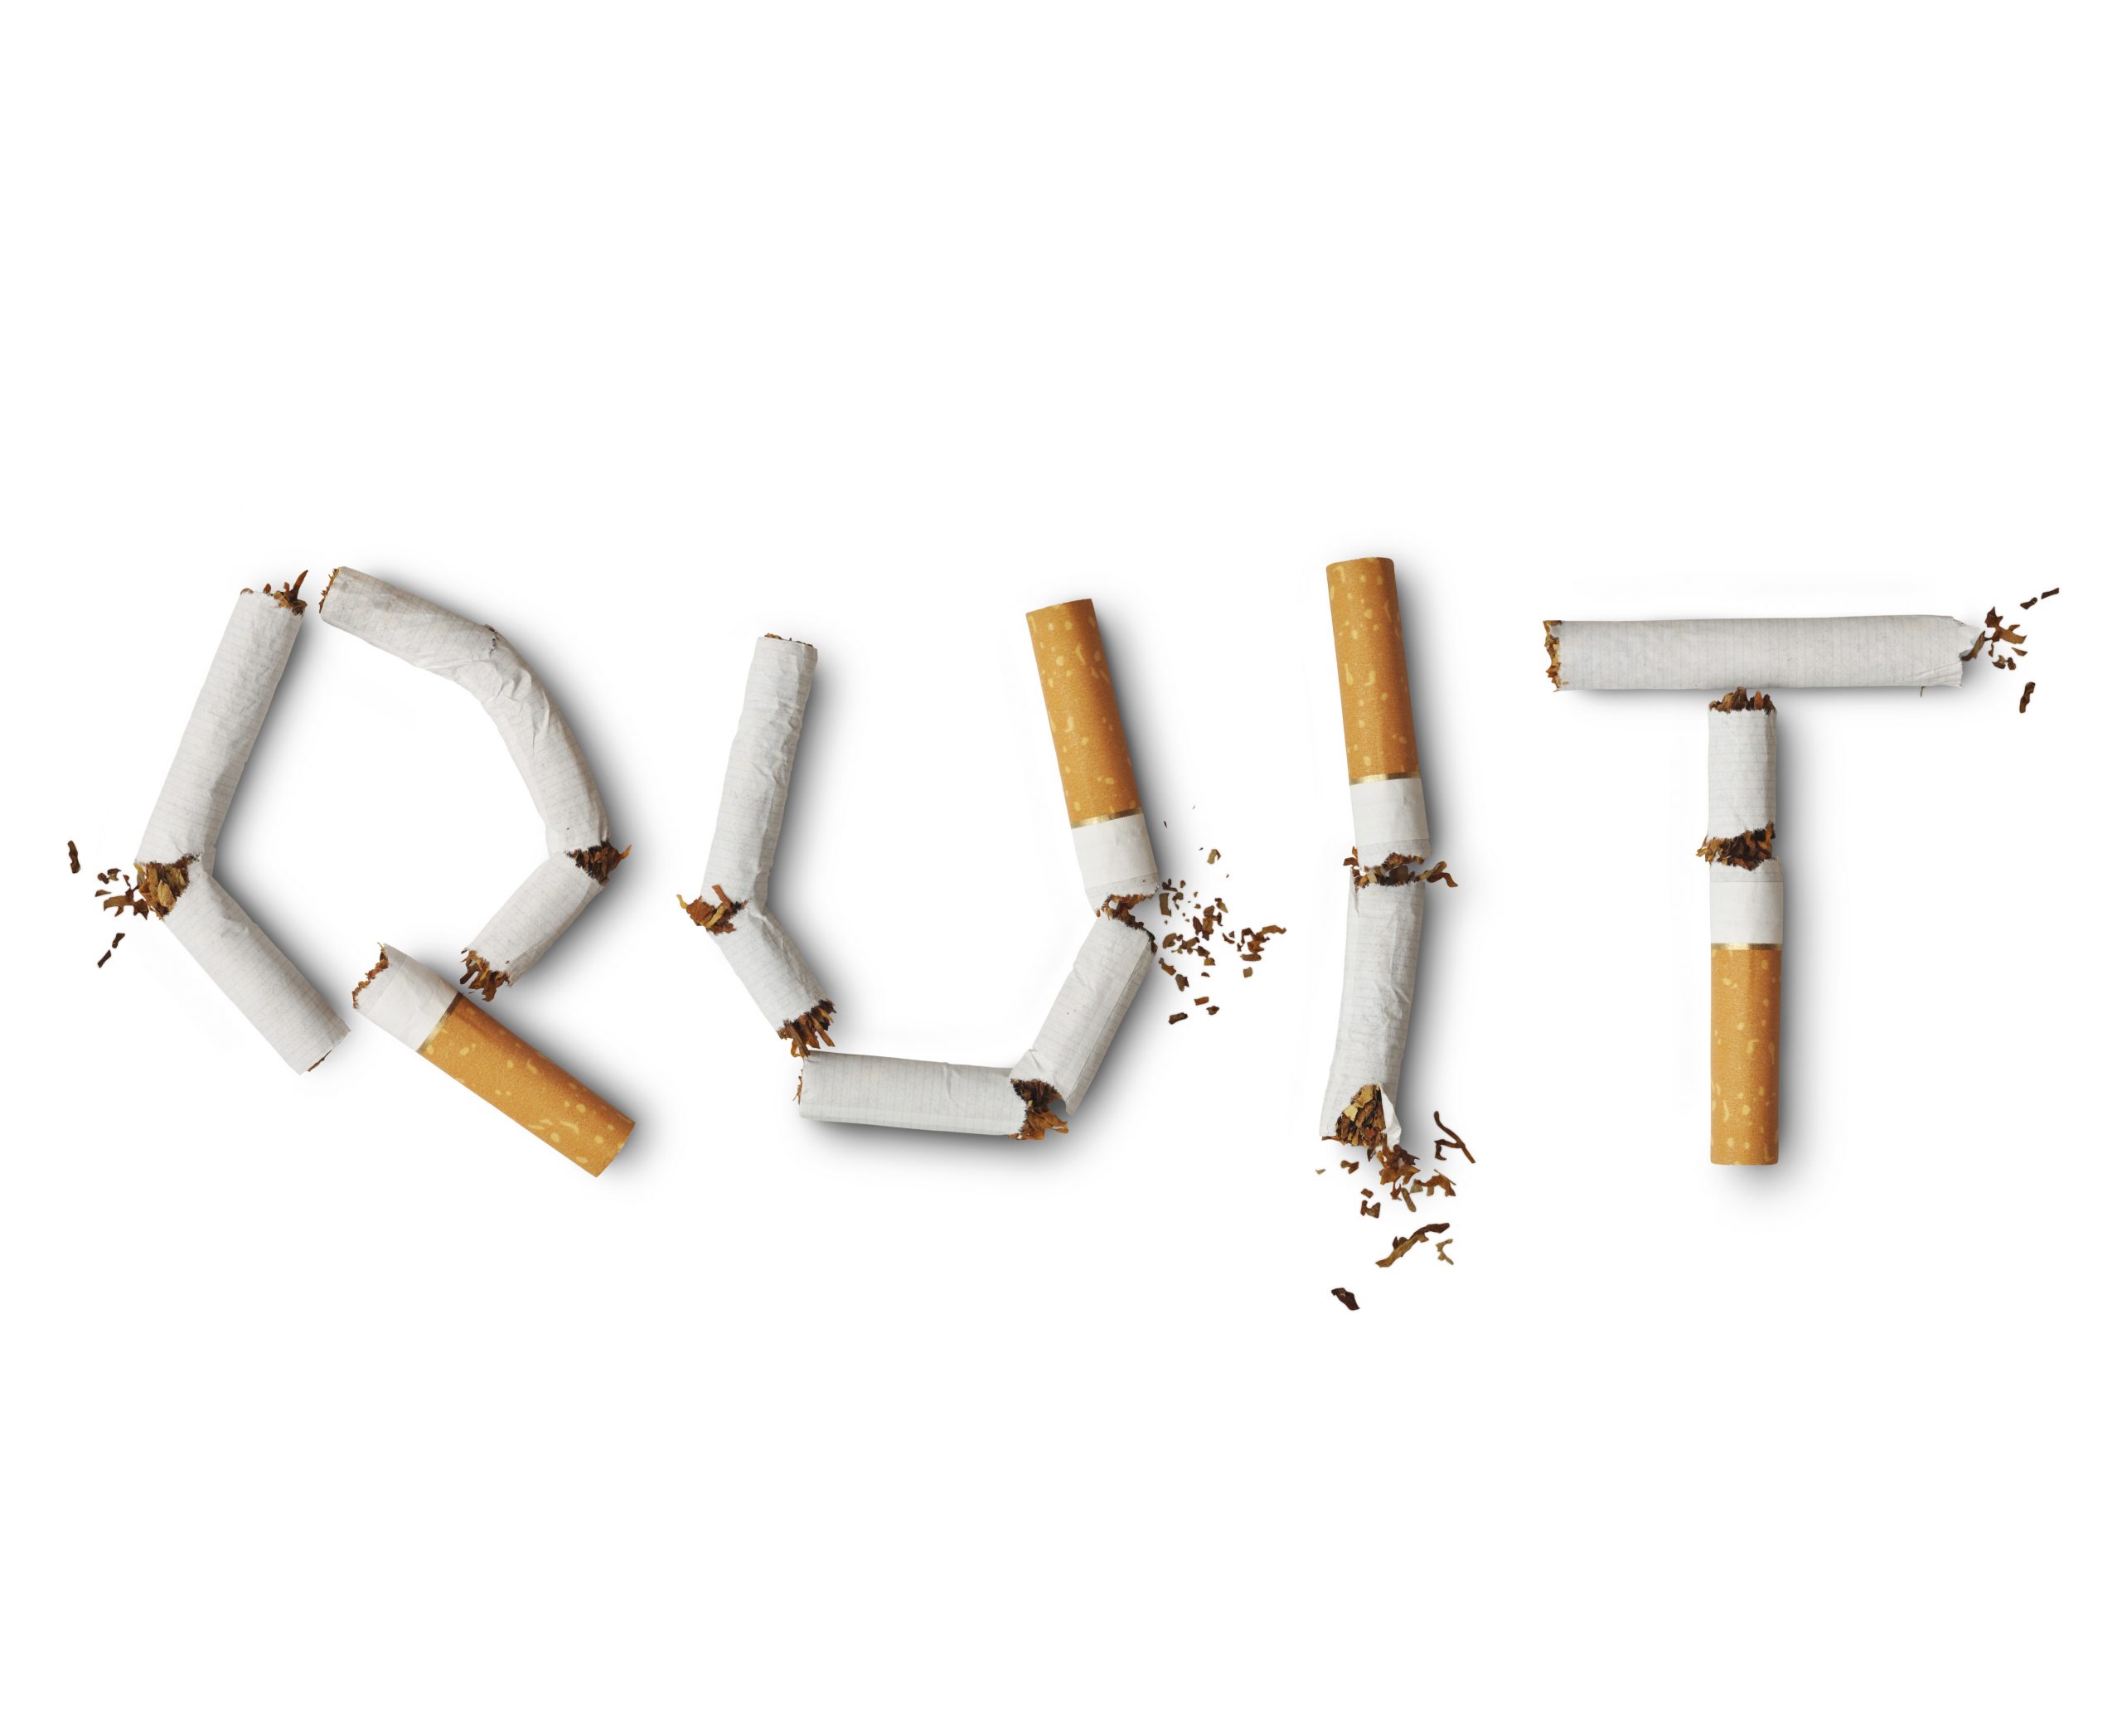 Fumatul – cum sa ne lasam cu ajutorul psihologului